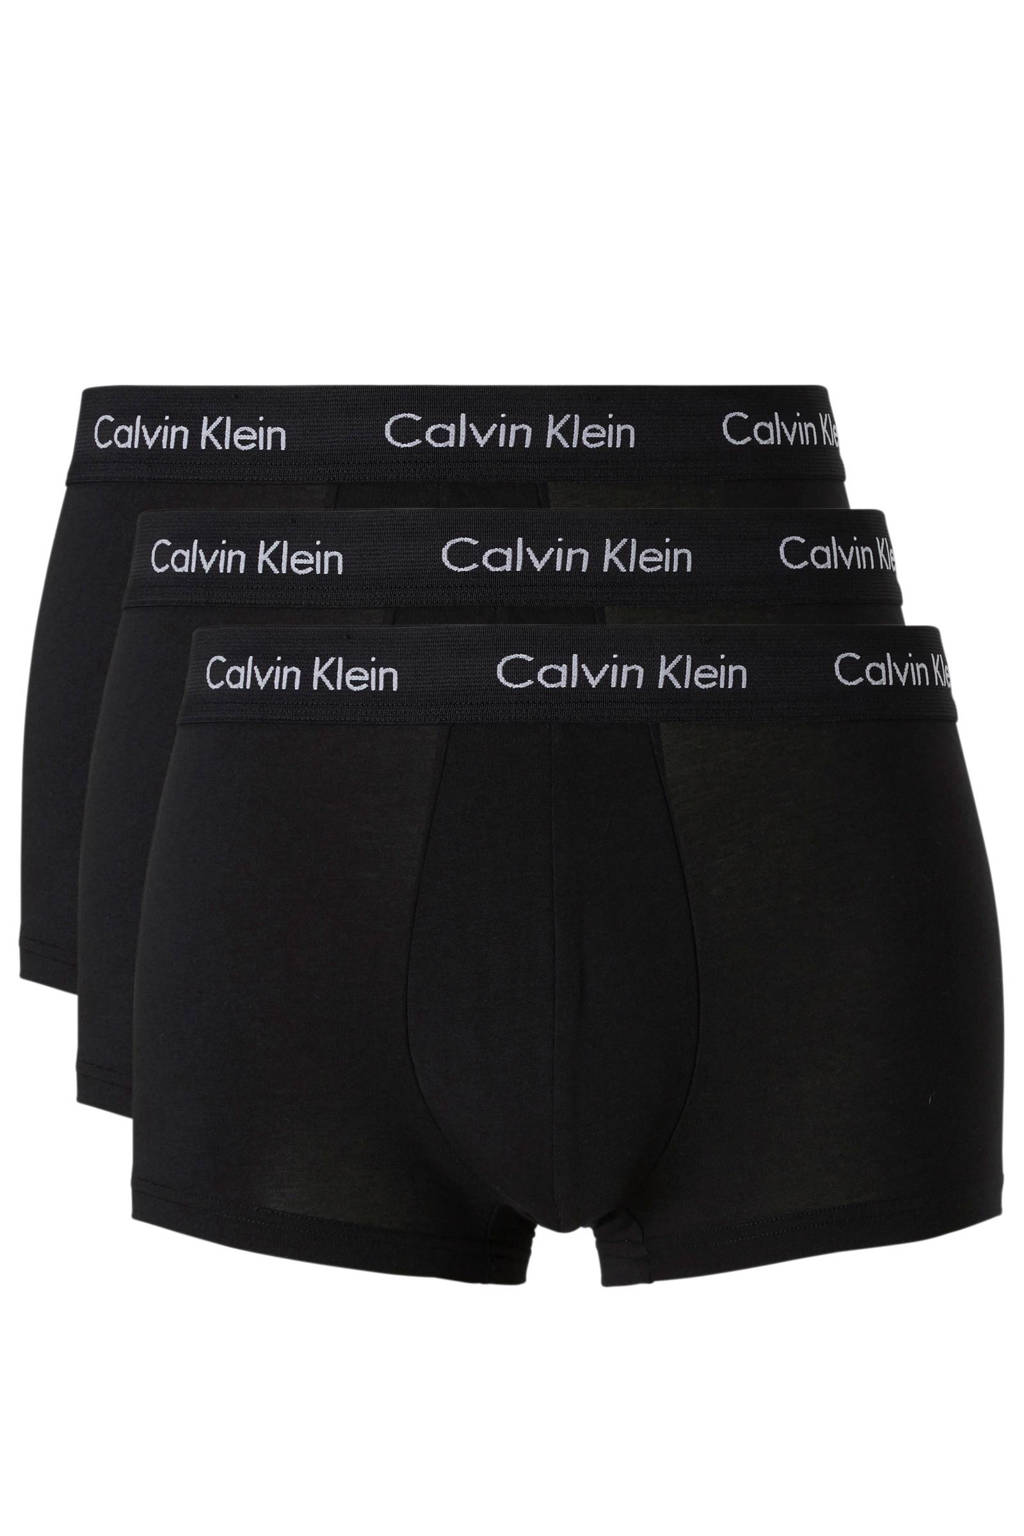 CALVIN KLEIN UNDERWEAR boxershort (set van 3), Zwart